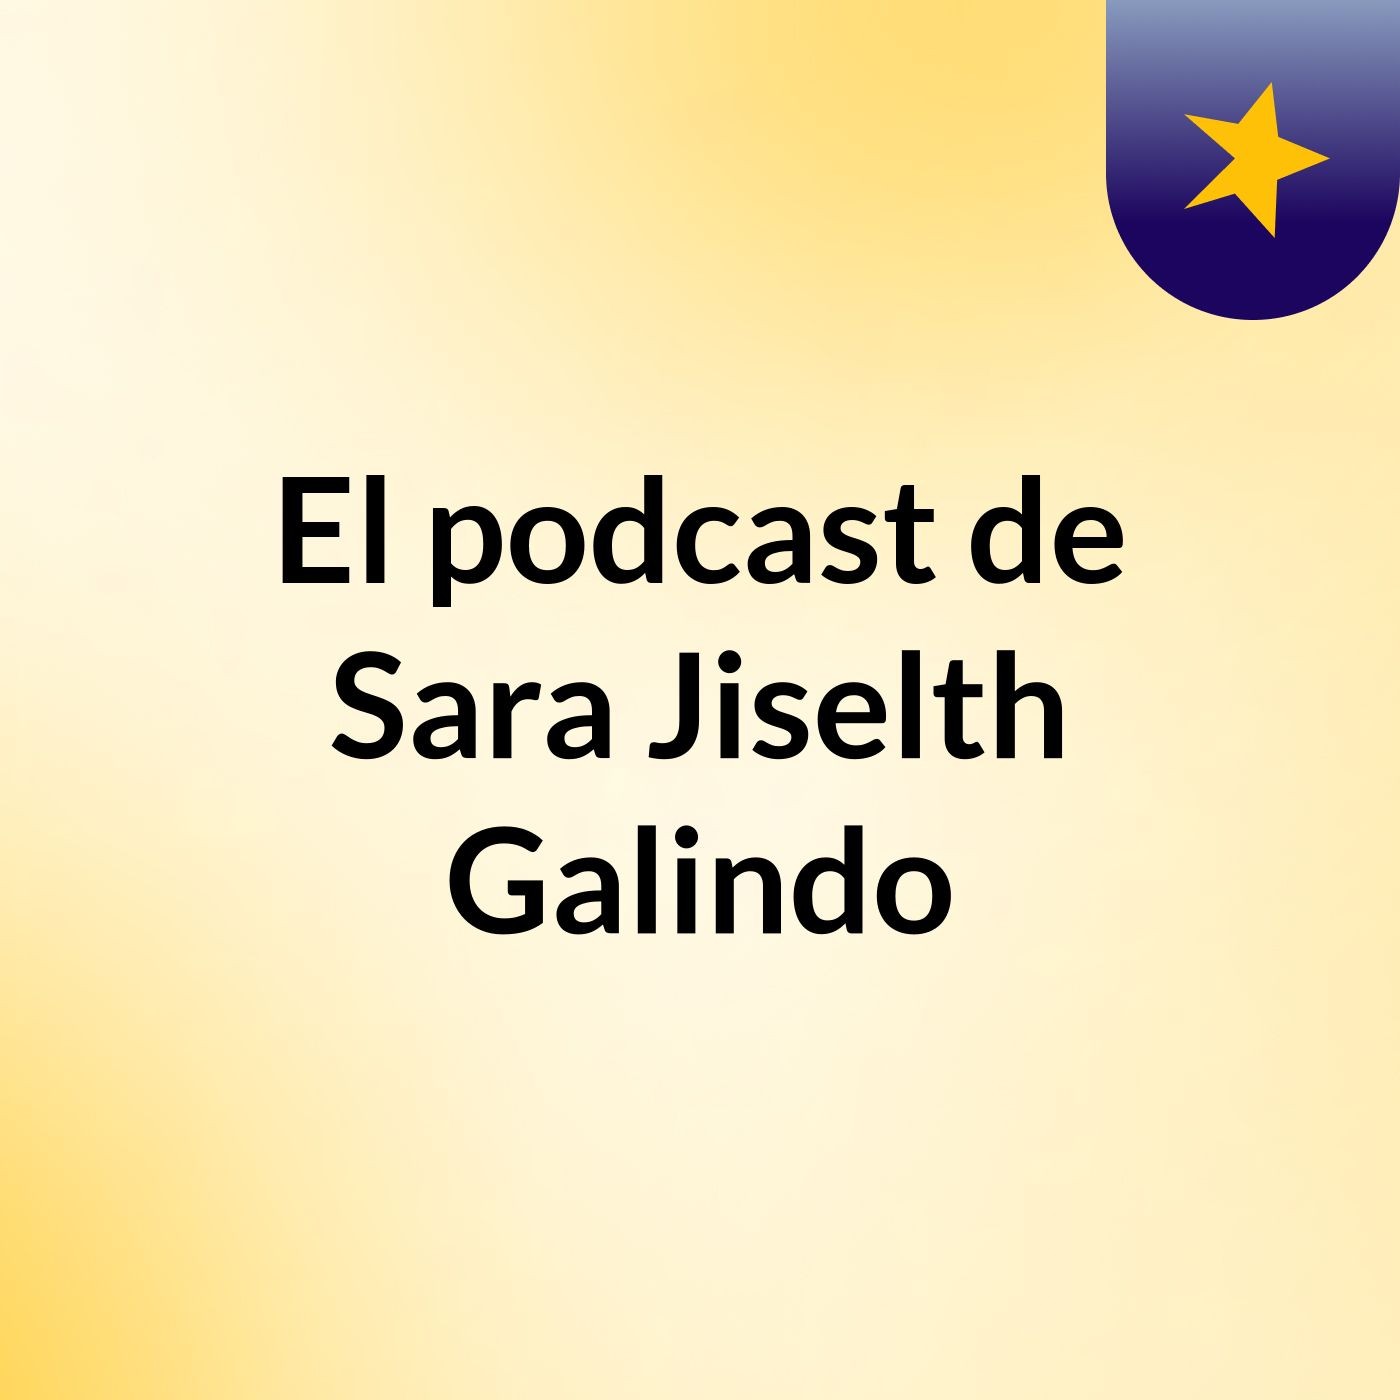 El podcast de Sara Jiselth Galindo